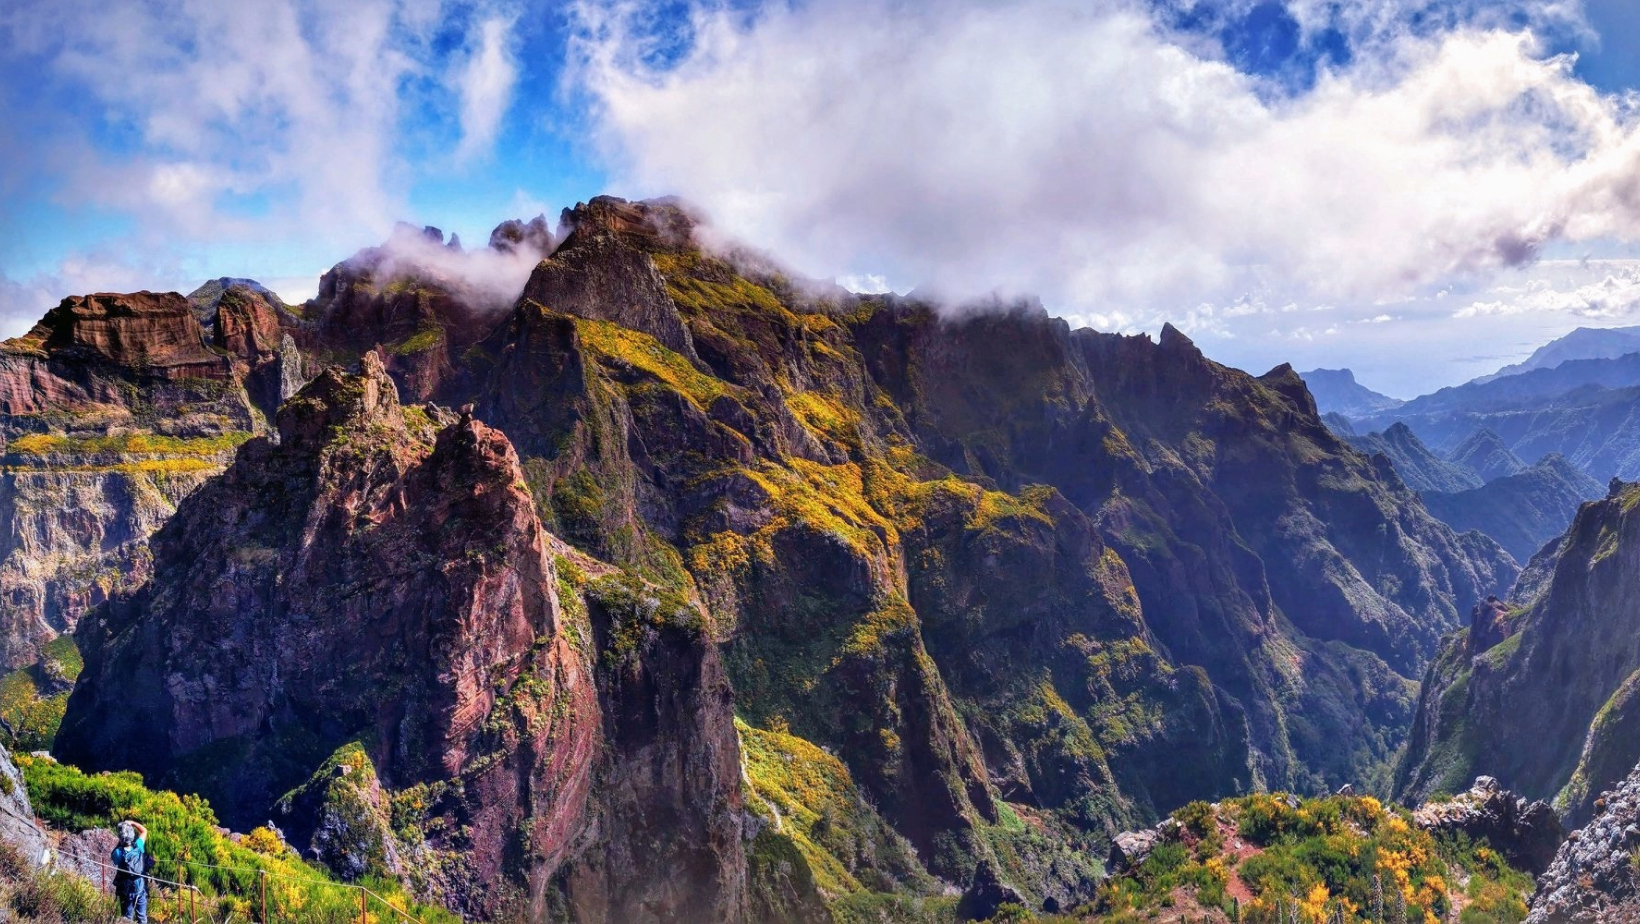 " Travessia entre o Pico do Arieiro e Pico Ruivo na Madeira"